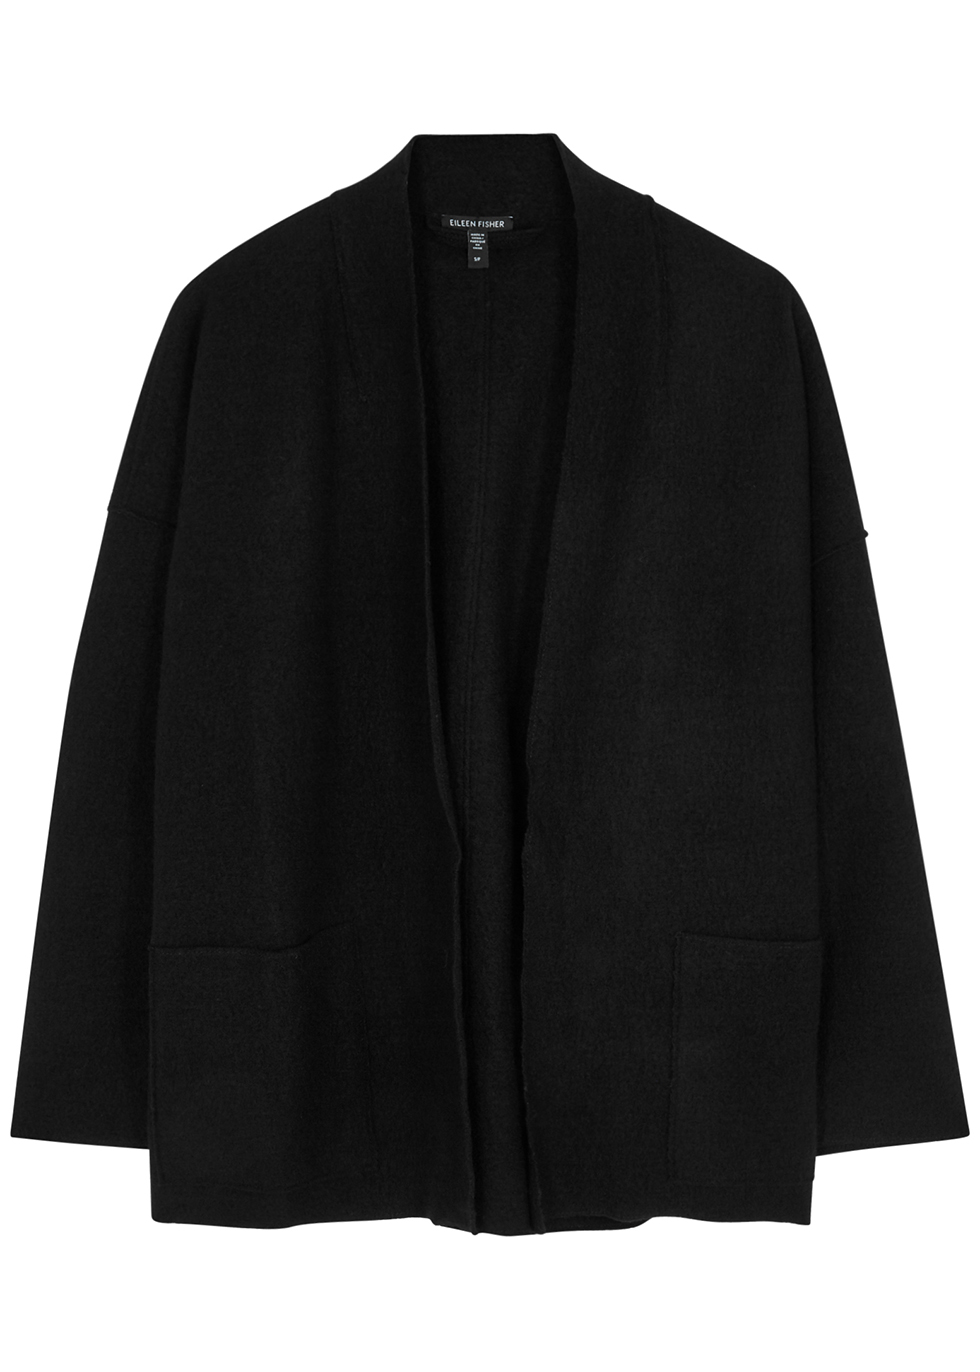 Black boiled wool jacket